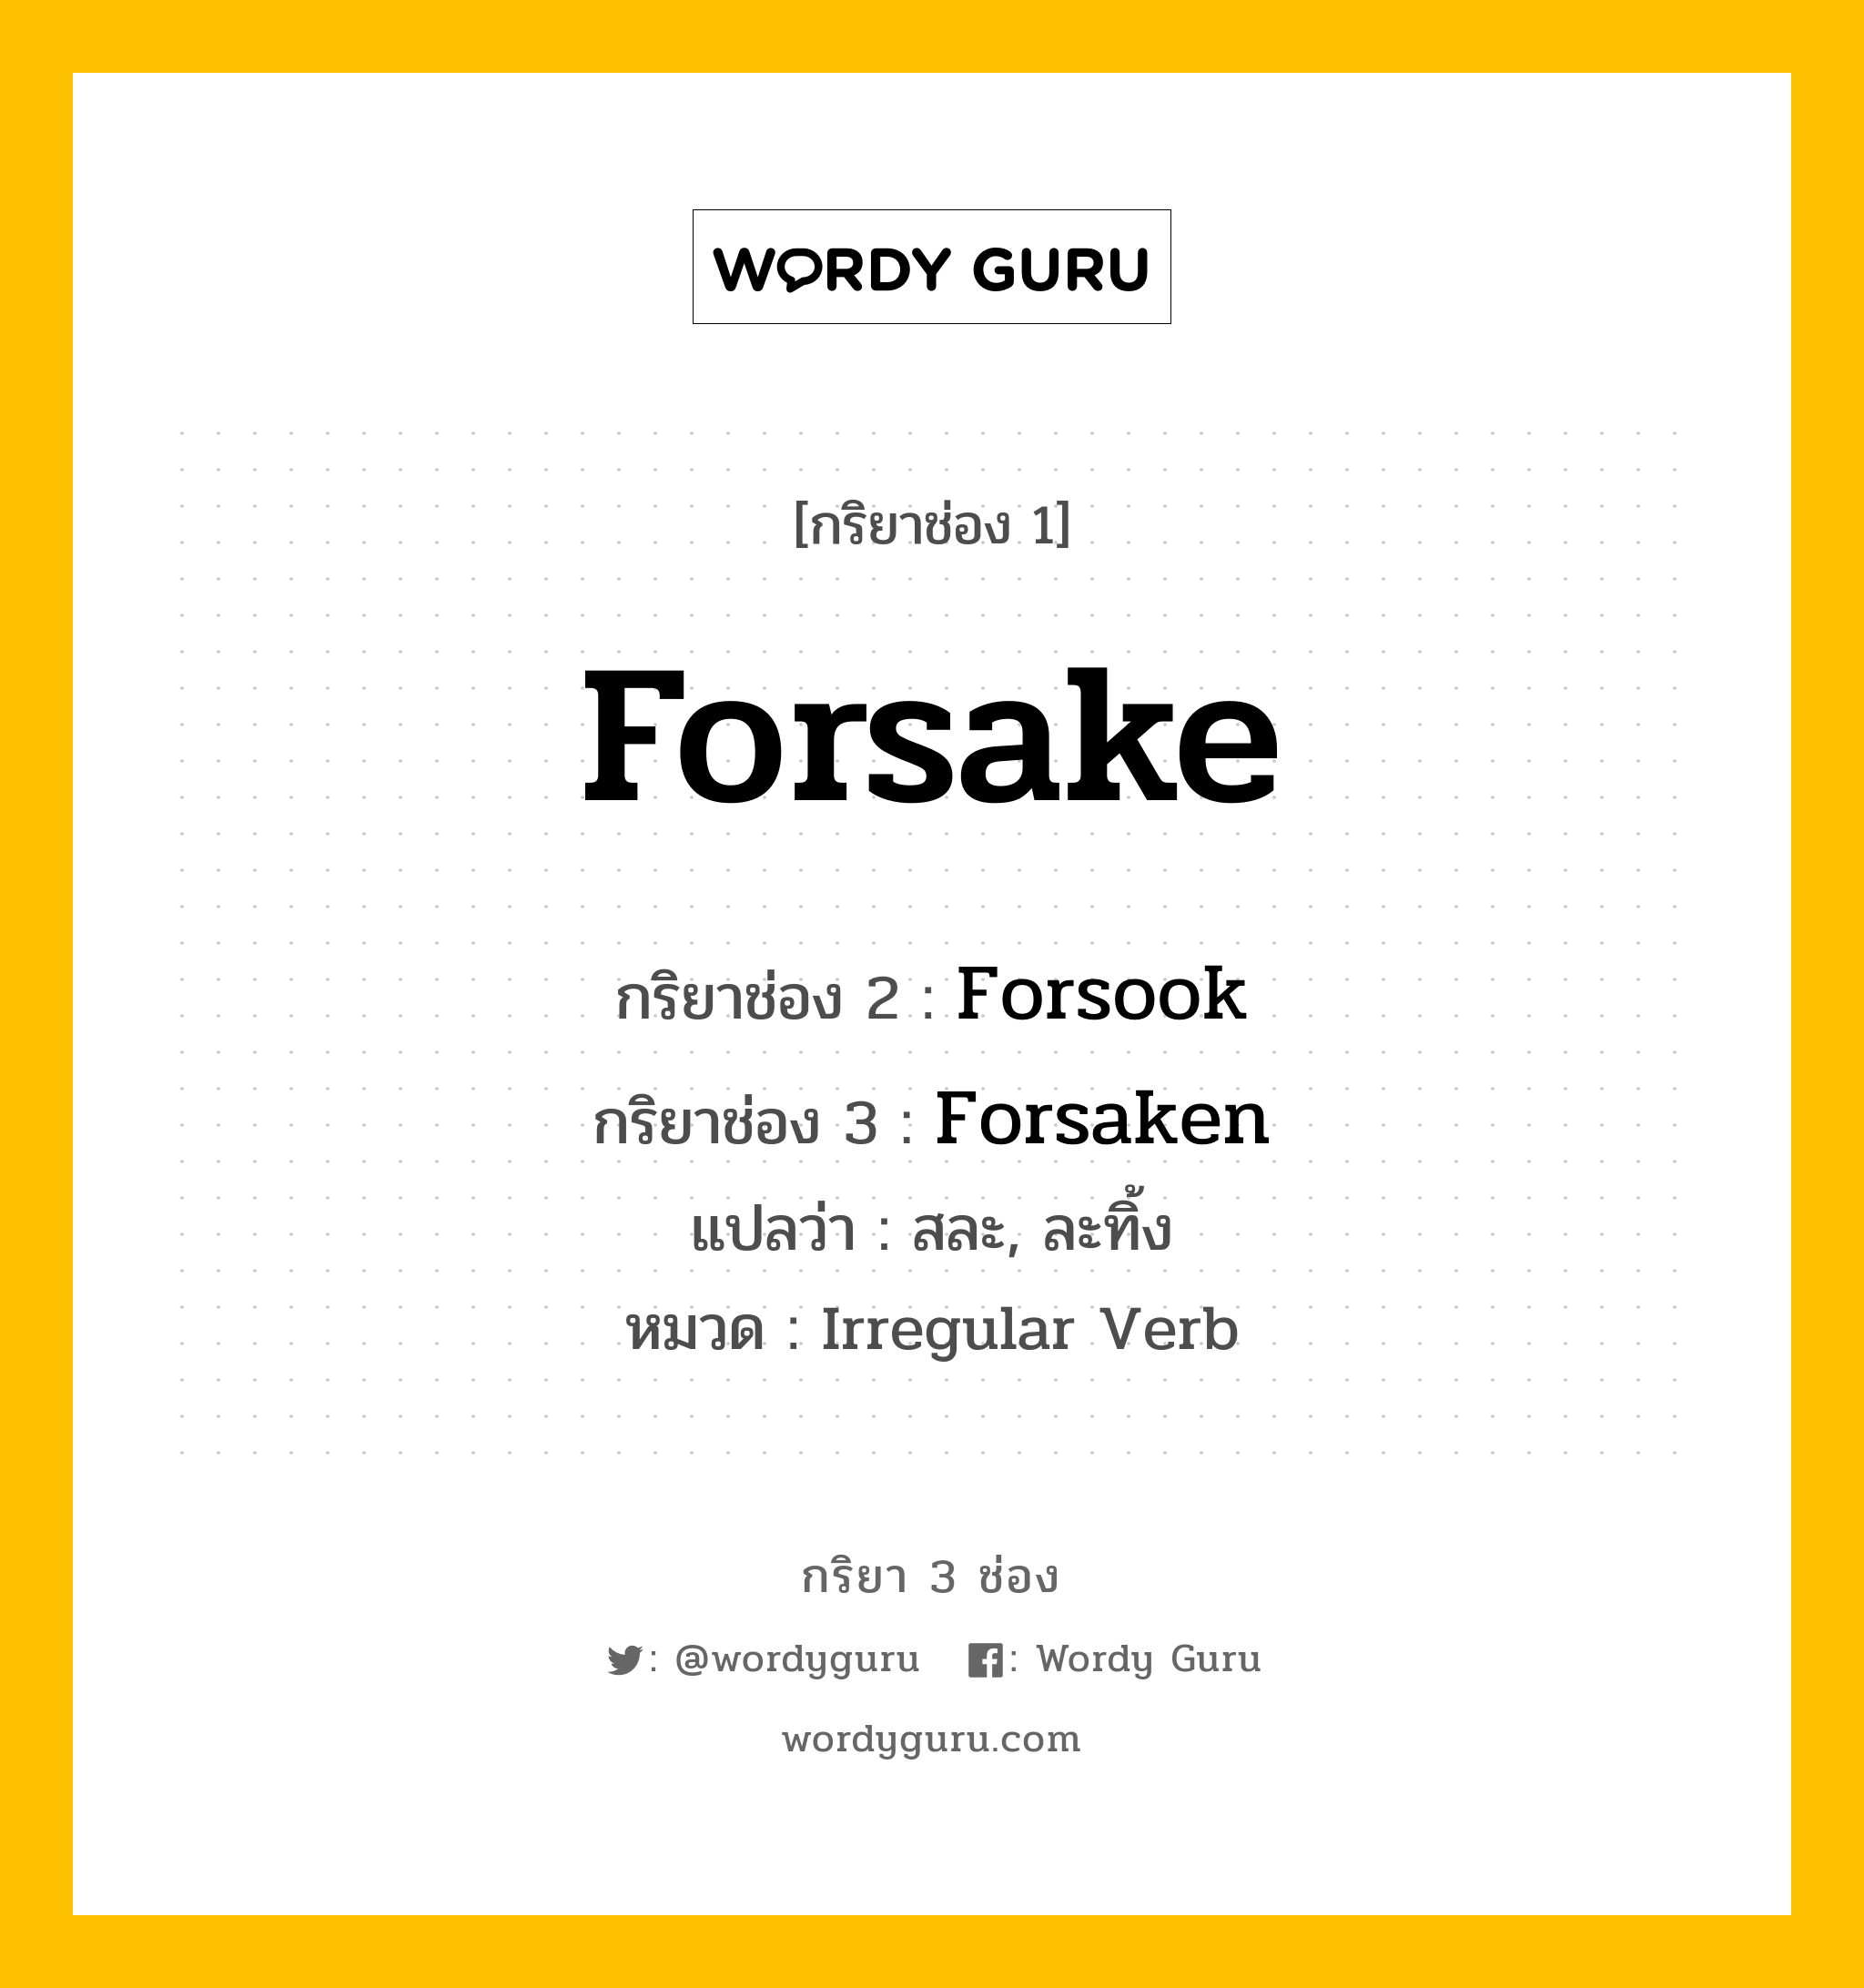 กริยา 3 ช่อง: Forsake ช่อง 2 Forsake ช่อง 3 คืออะไร, กริยาช่อง 1 Forsake กริยาช่อง 2 Forsook กริยาช่อง 3 Forsaken แปลว่า สละ, ละทิ้ง หมวด Irregular Verb หมวด Irregular Verb